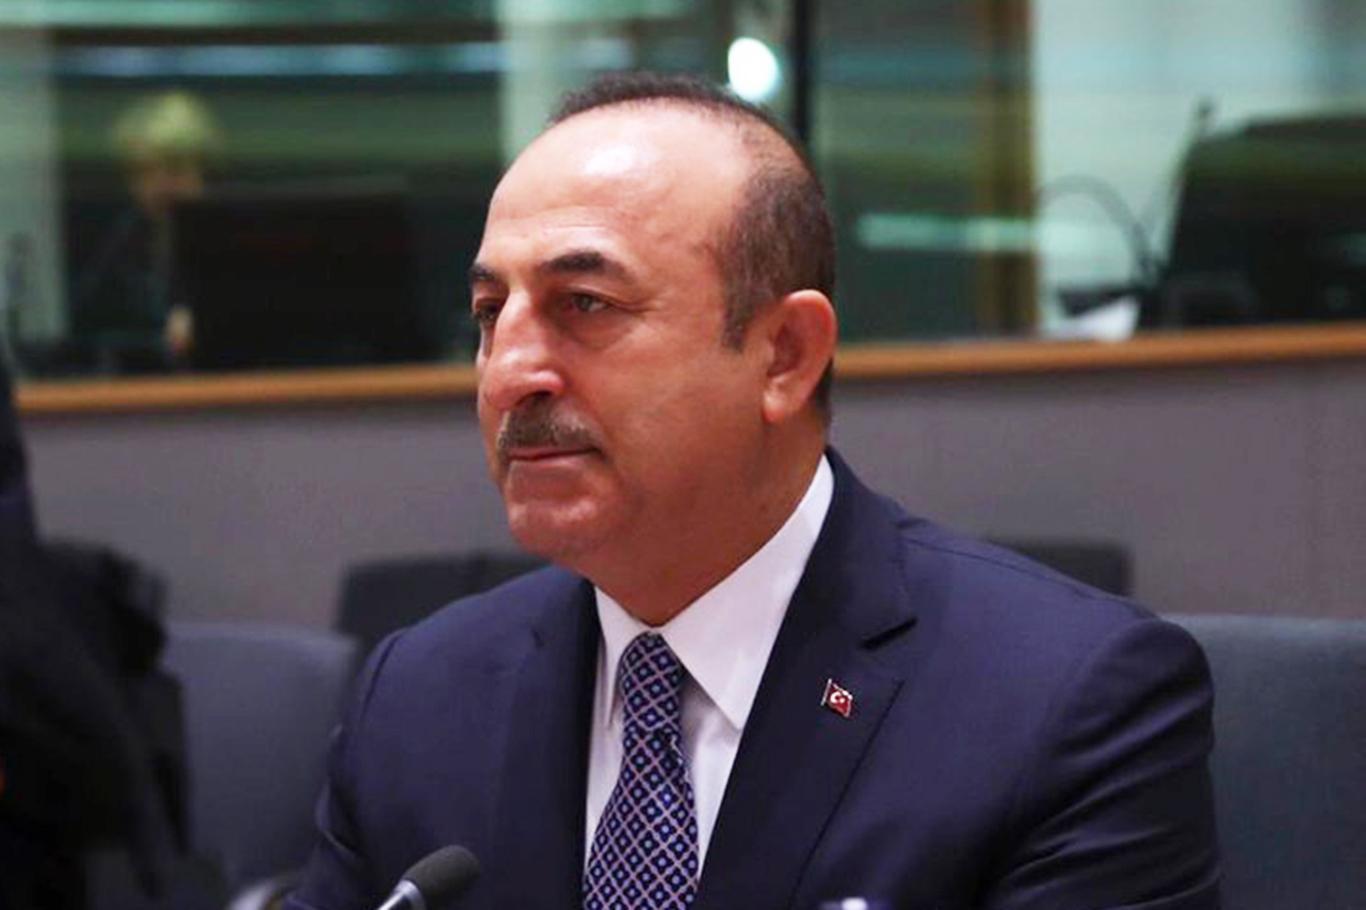 Çavuşoğlu, Filistin Dışişleri Bakanı ile ABD'nin Ortadoğu planını görüştü